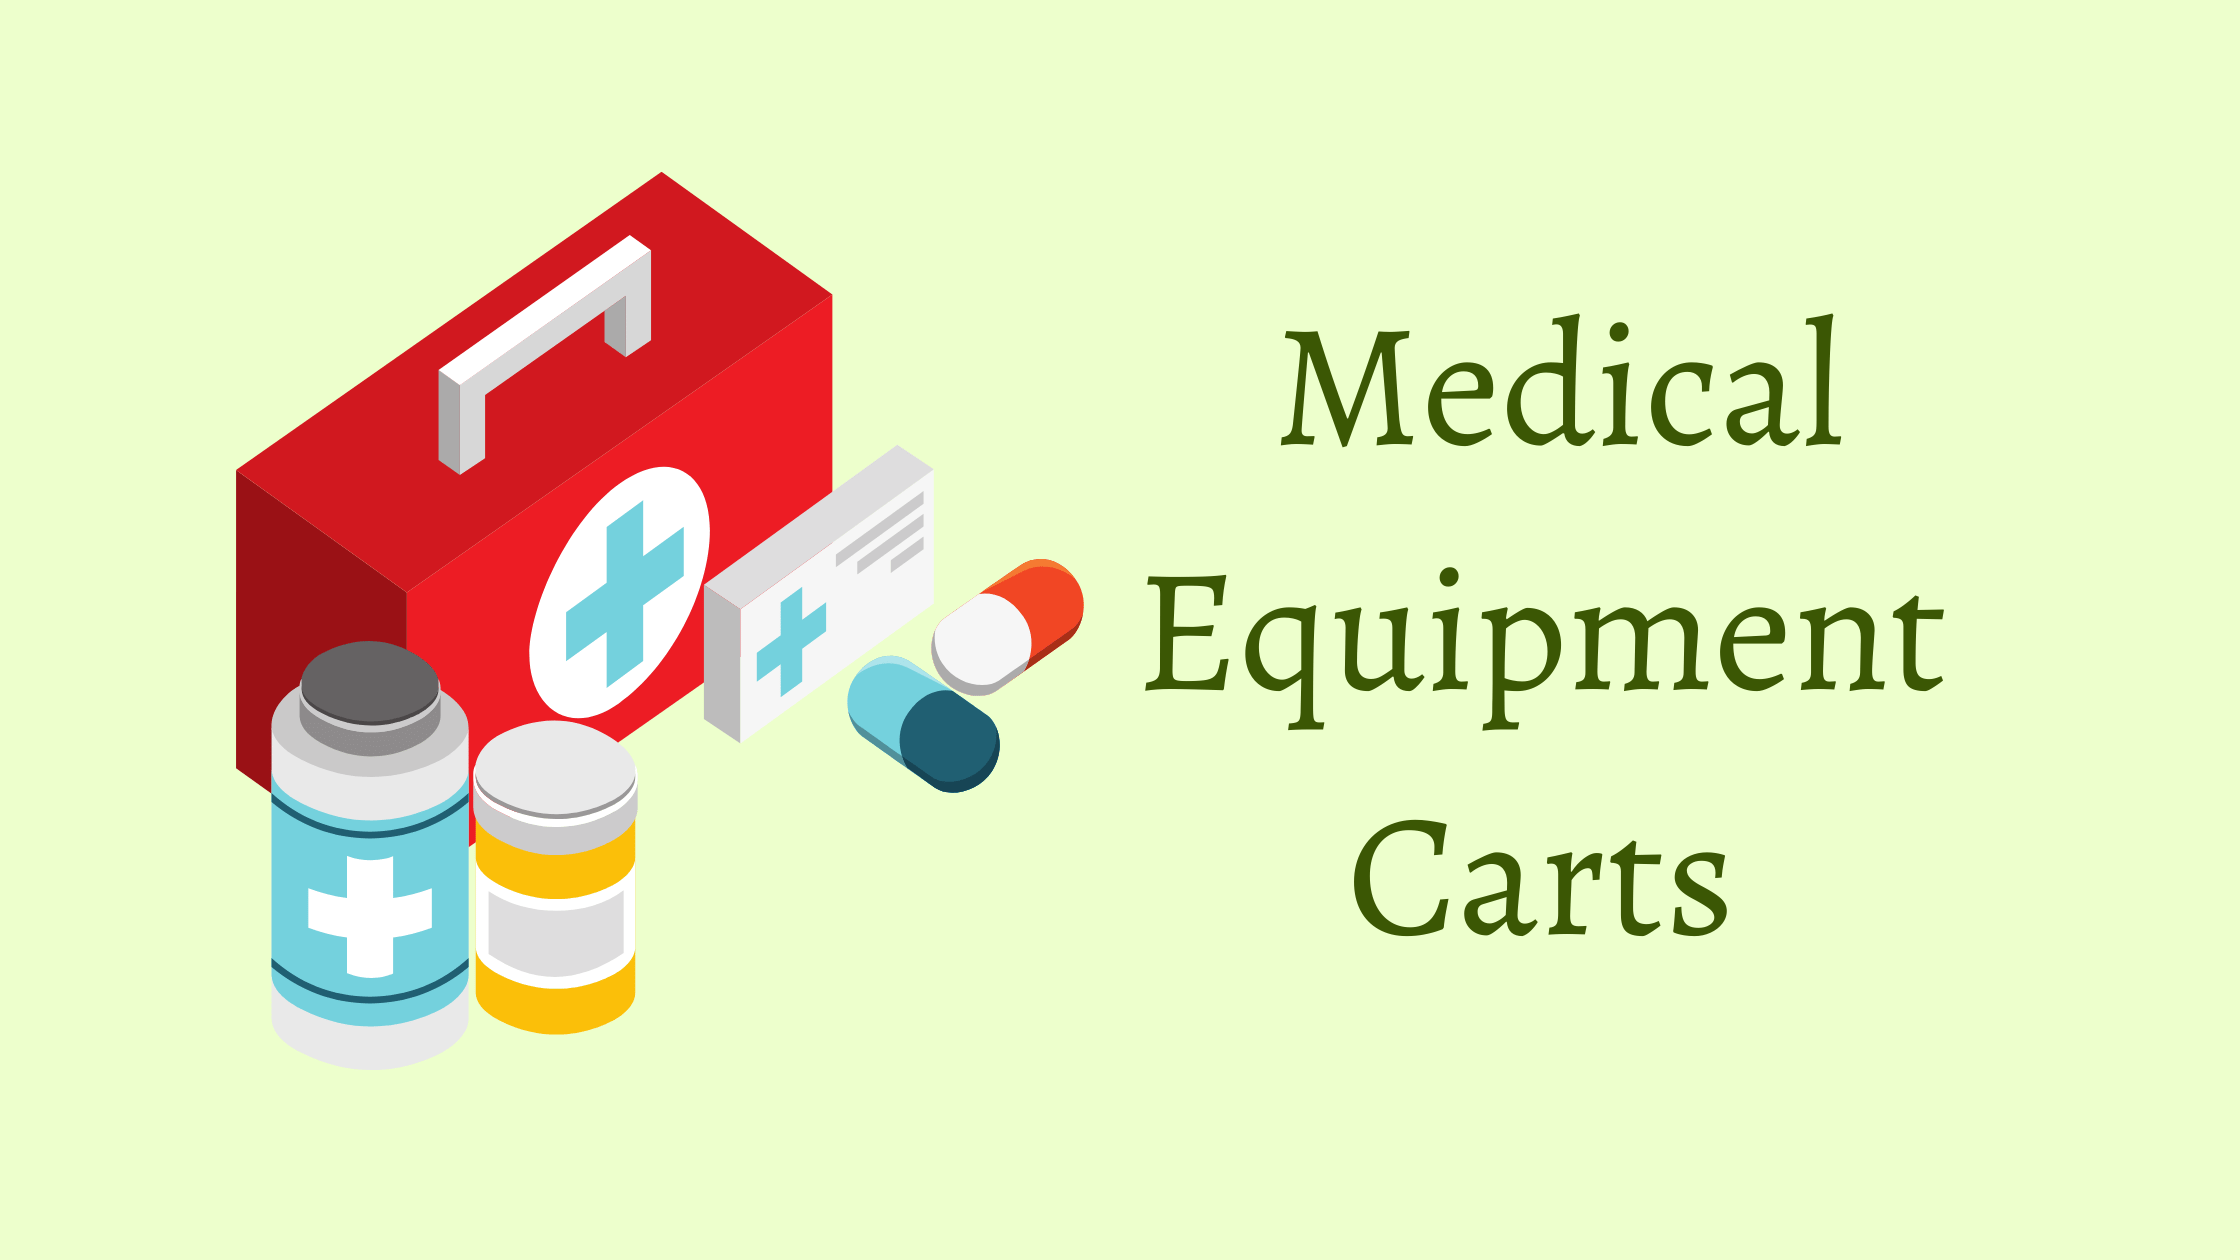 Medical Equipment Carts